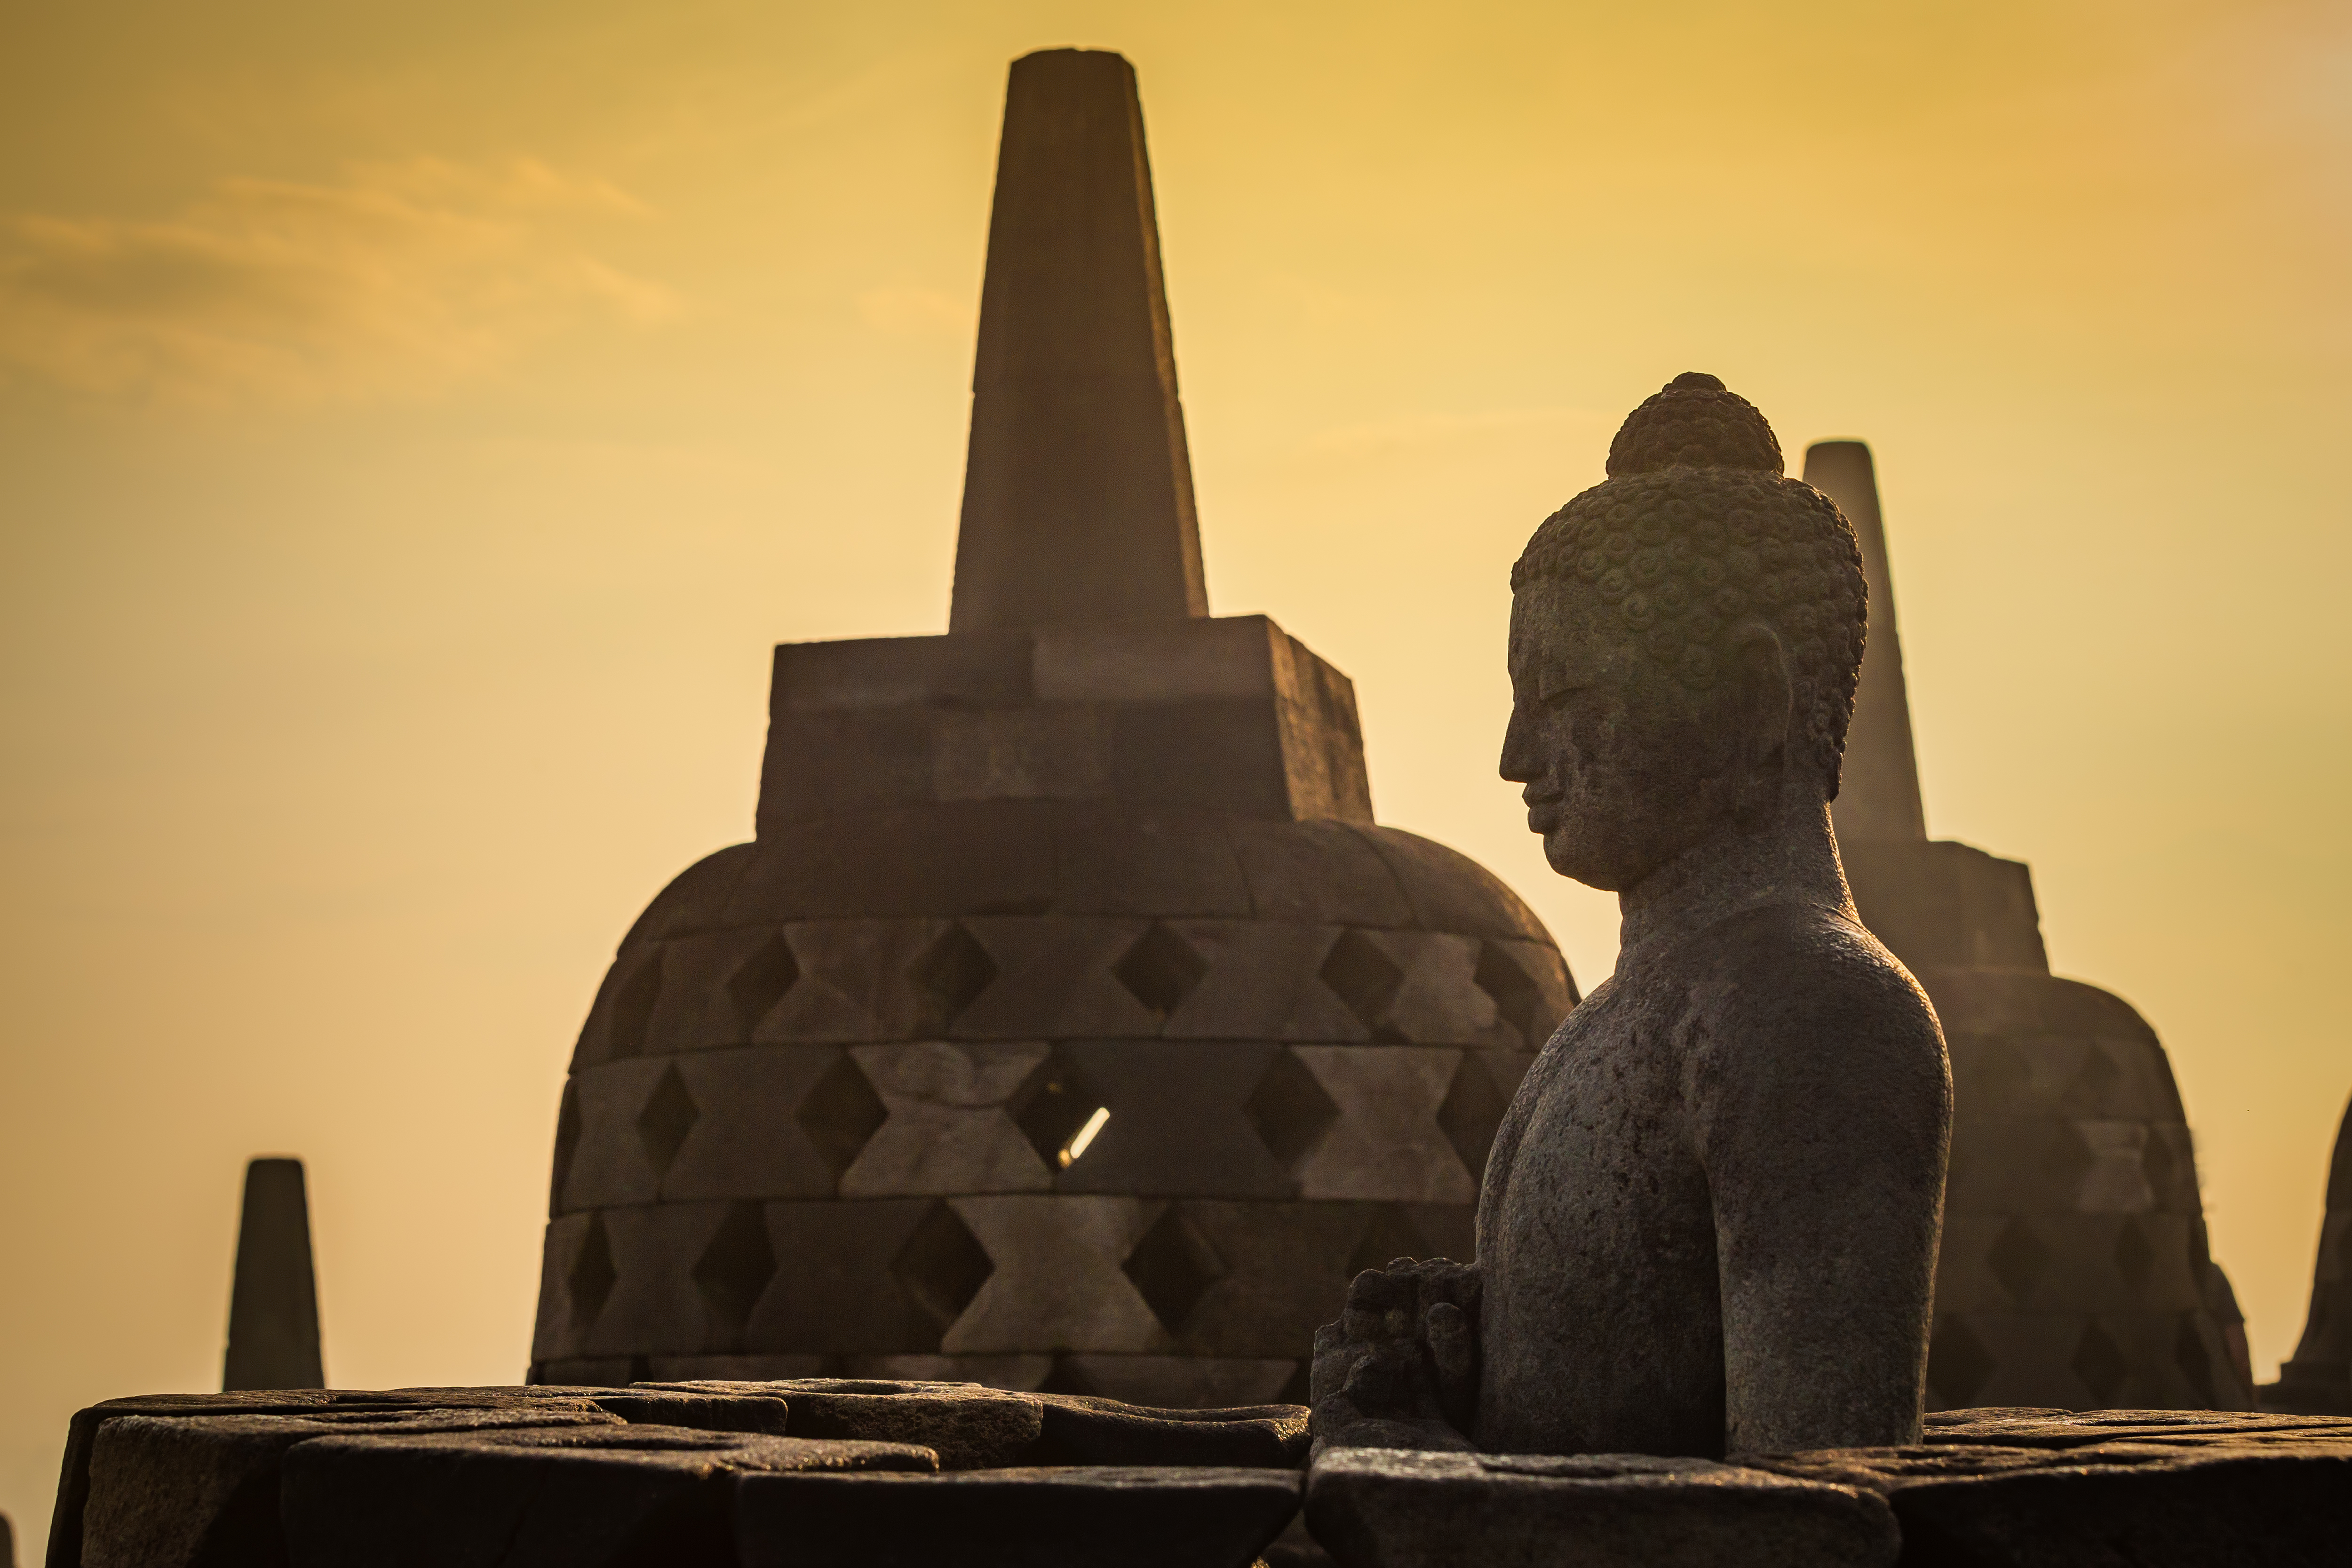 印尼-Punthuk Setumbuk山, 婆羅浮屠寺,普蘭巴南山頂俯瞰日出